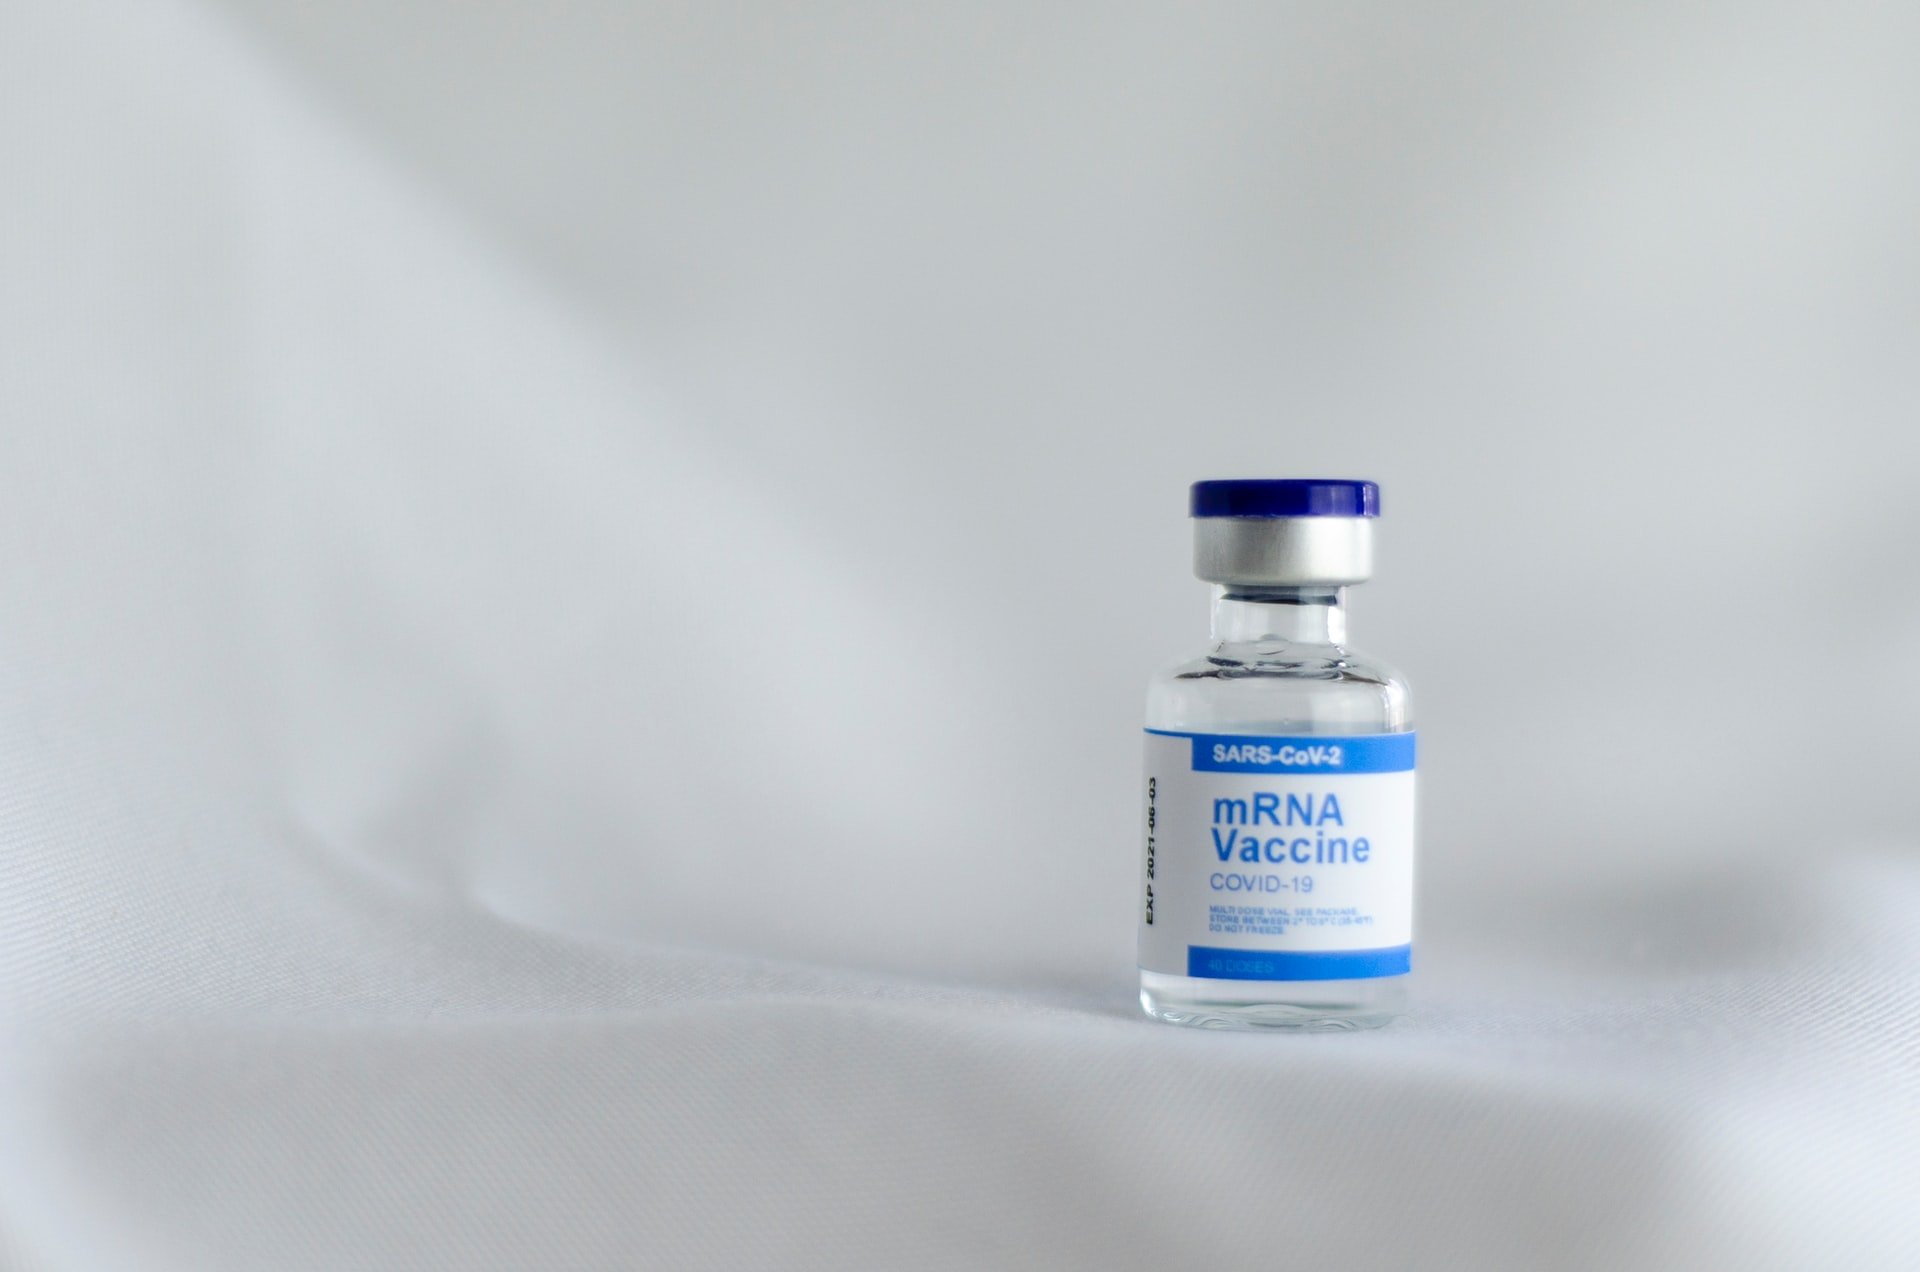 

В Удмуртии сохраняется высокий спрос на вакцинацию от коронавируса

